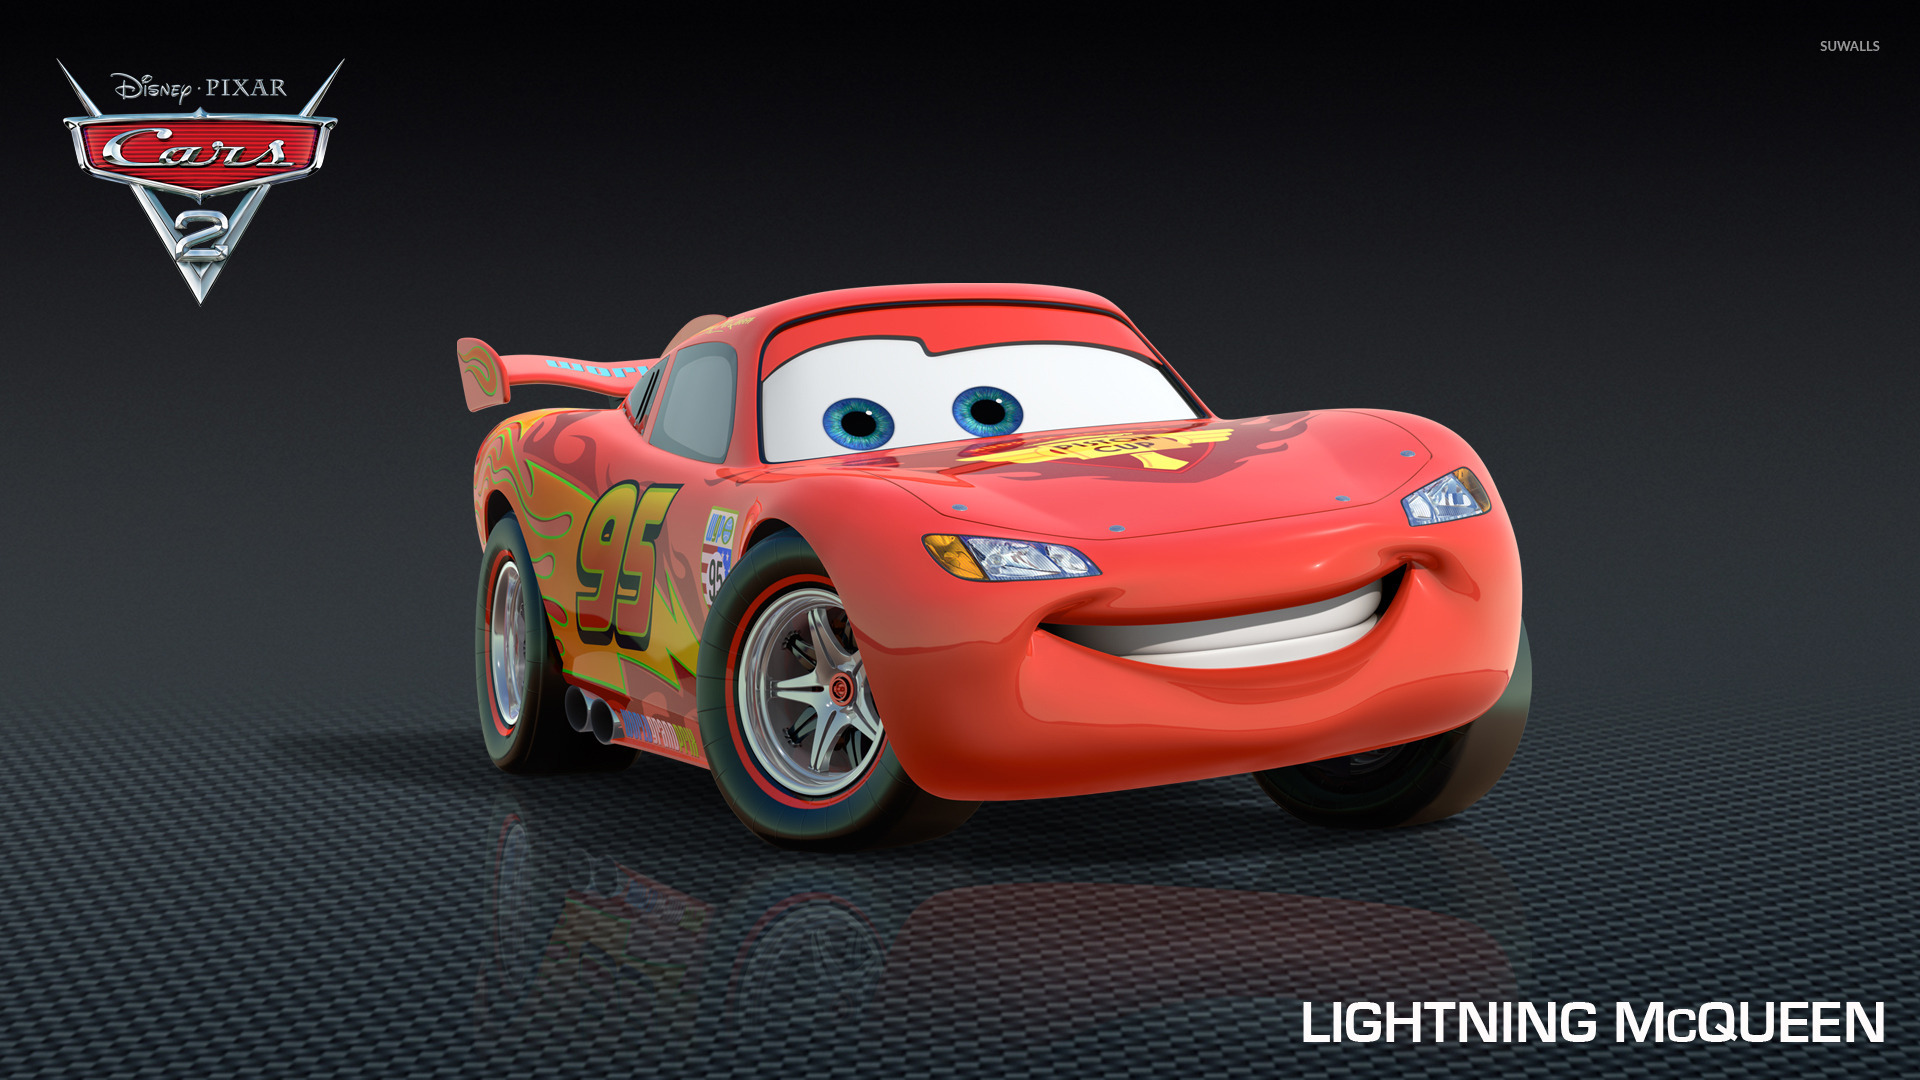 Lightning McQueen screensaver Cars 3 Animation Pixar 4K 5K wallpaper  hdwallpaper desktop  Disney cars wallpaper Disney cars movie Cars movie